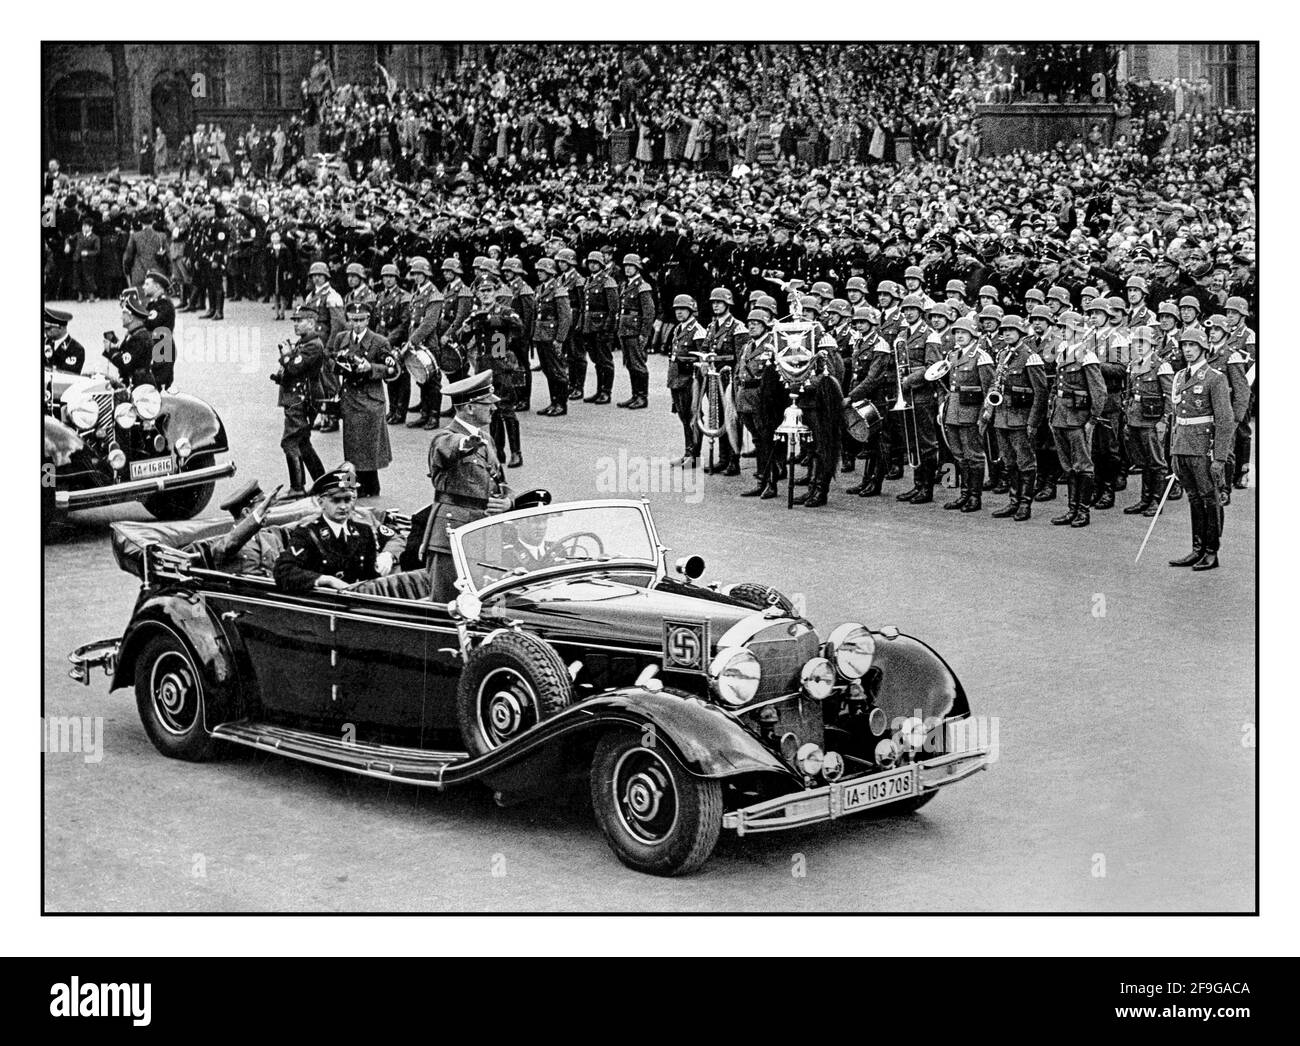 Adolf Hitler in Uniform, der in seinem offiziellen offenen Mercedes-Wagen mit Hakenkreuzarmband steht, grüßt das Militär und die Massen bei einer großen Nazi-Kundgebung im Jahr 1938 in Deutschland. Hitler begrüßt die Teilnehmer eines Reichsparteitages in Nürnberg. Ein uniformierte Martin Bormann und Dr. Goebbels saßen ebenfalls im Heck eines offenen Mercedes-Autos Stockfoto